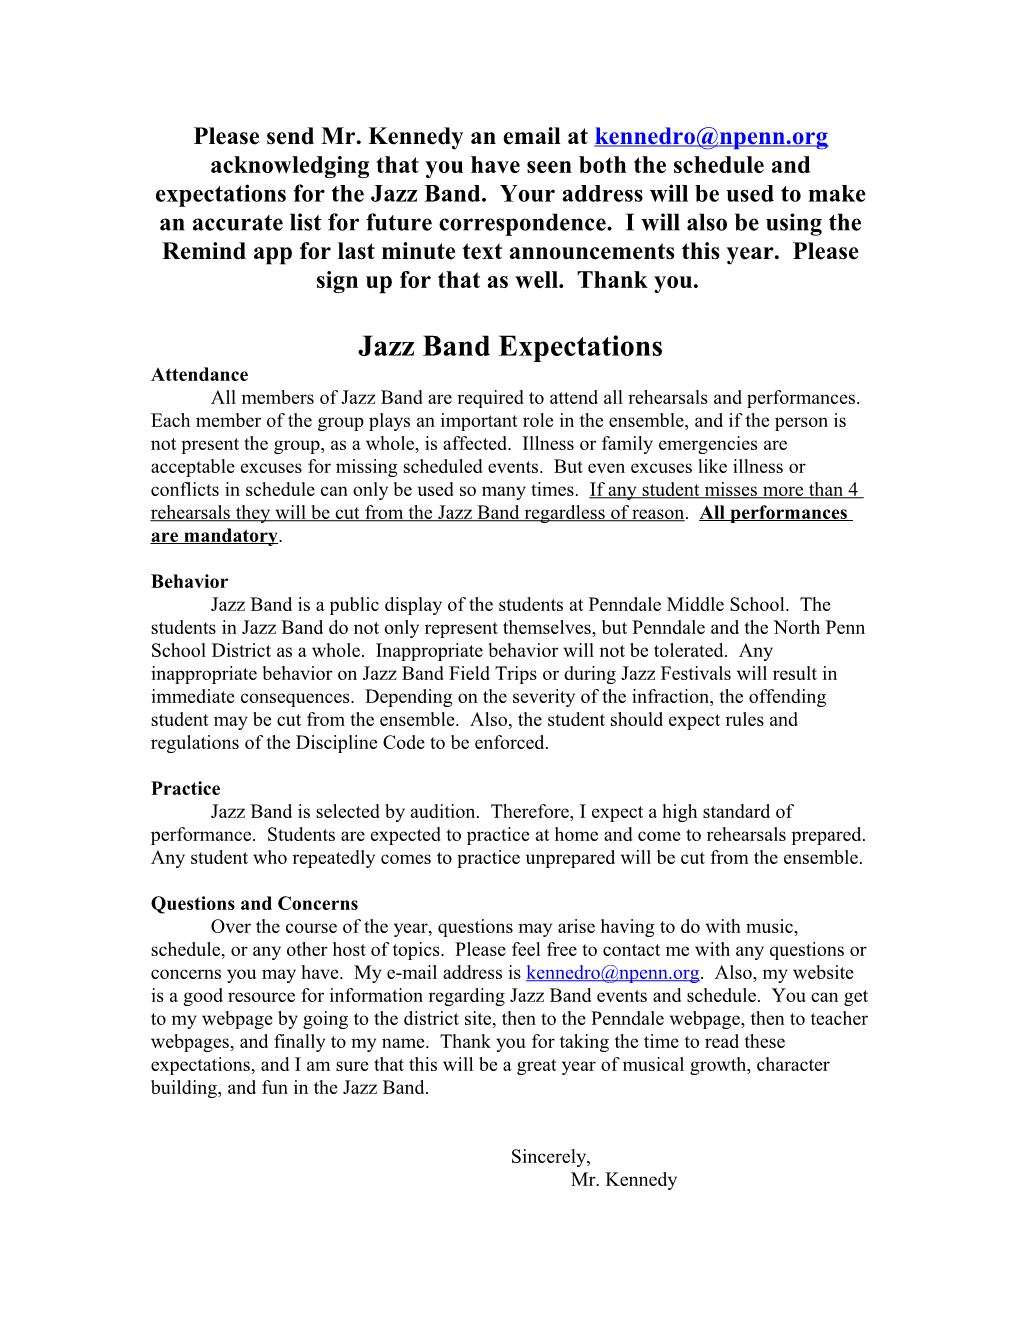 Jazz Band Expectations